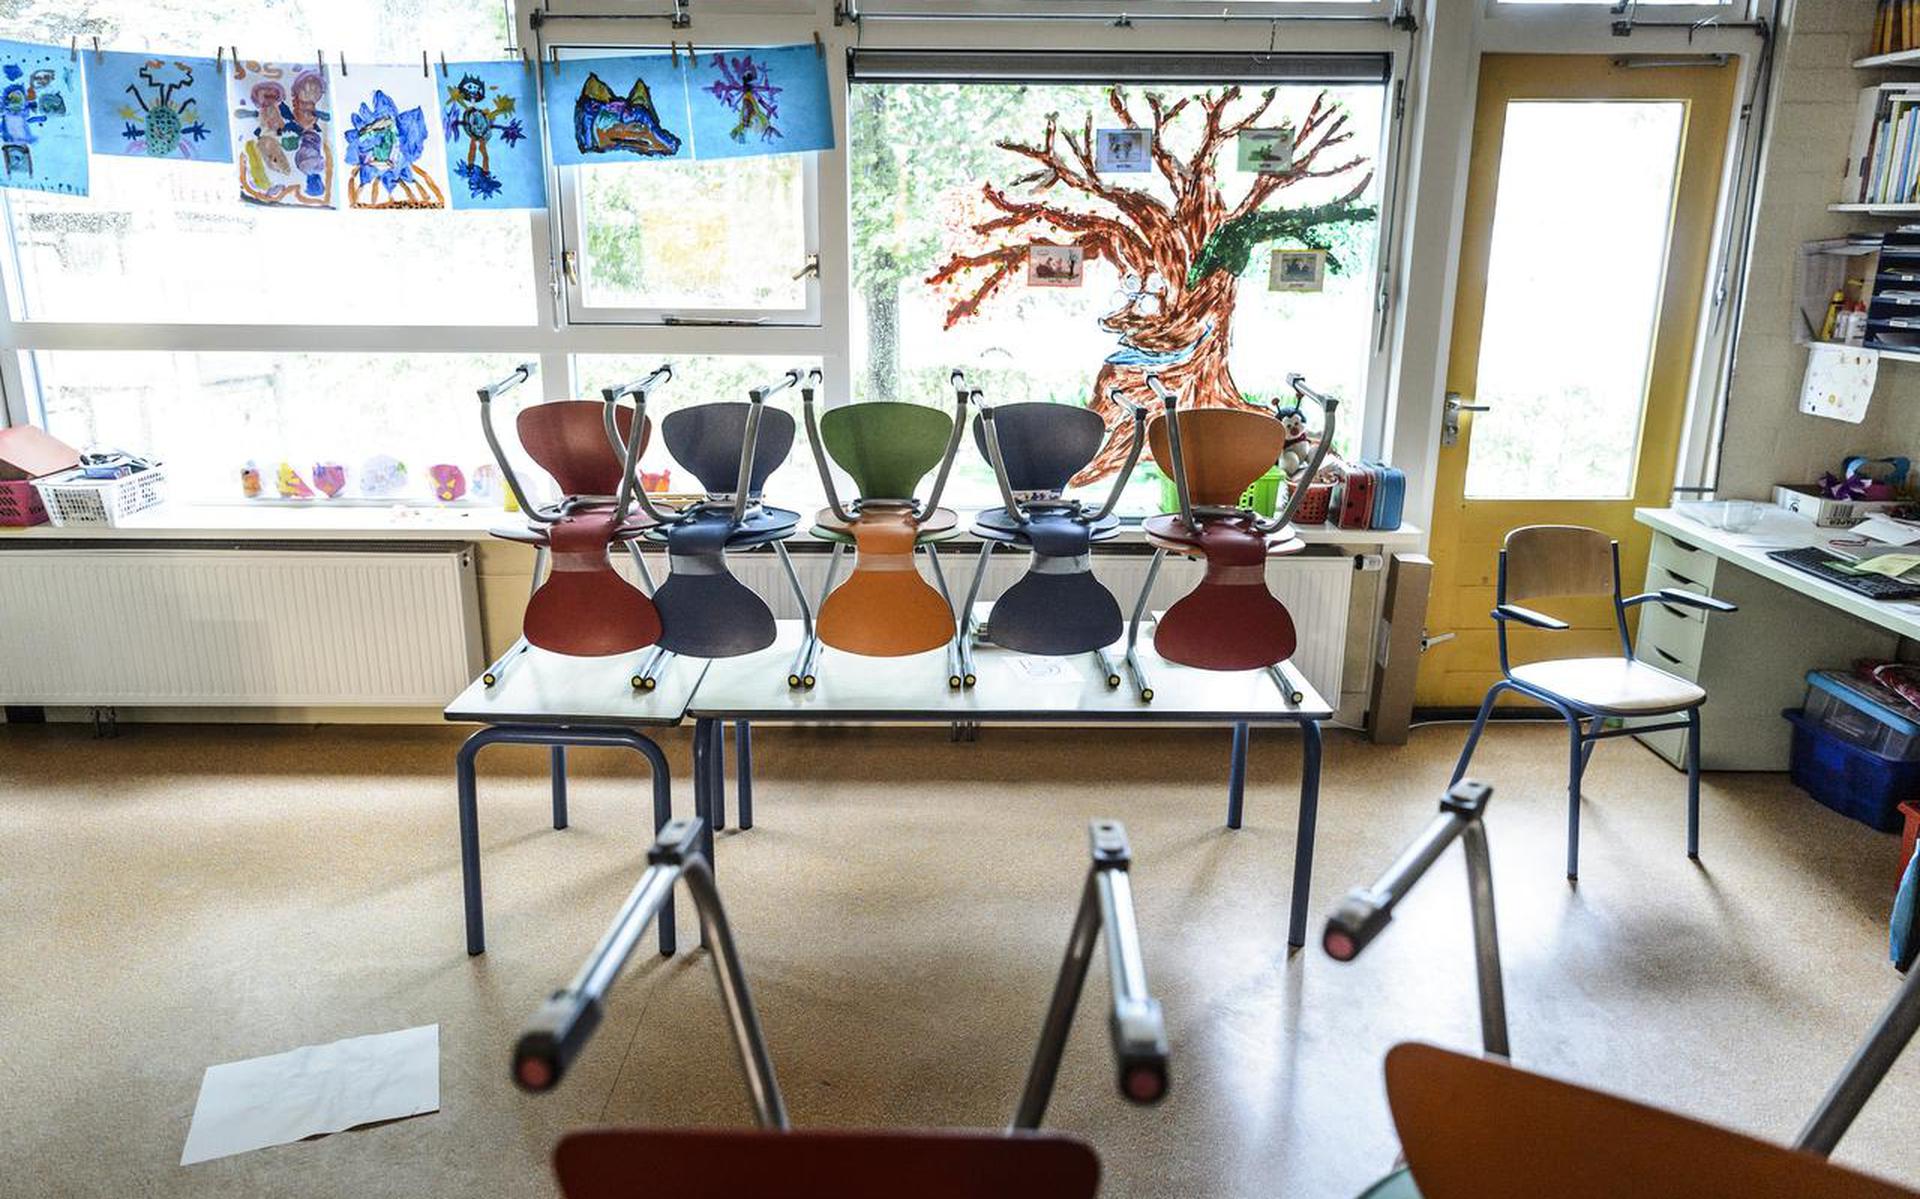 Op 14 februari blijven de klaslokalen in Noord-Nederland leeg, leerkrachten staken. Foto DvhN/Kees van de Veen
